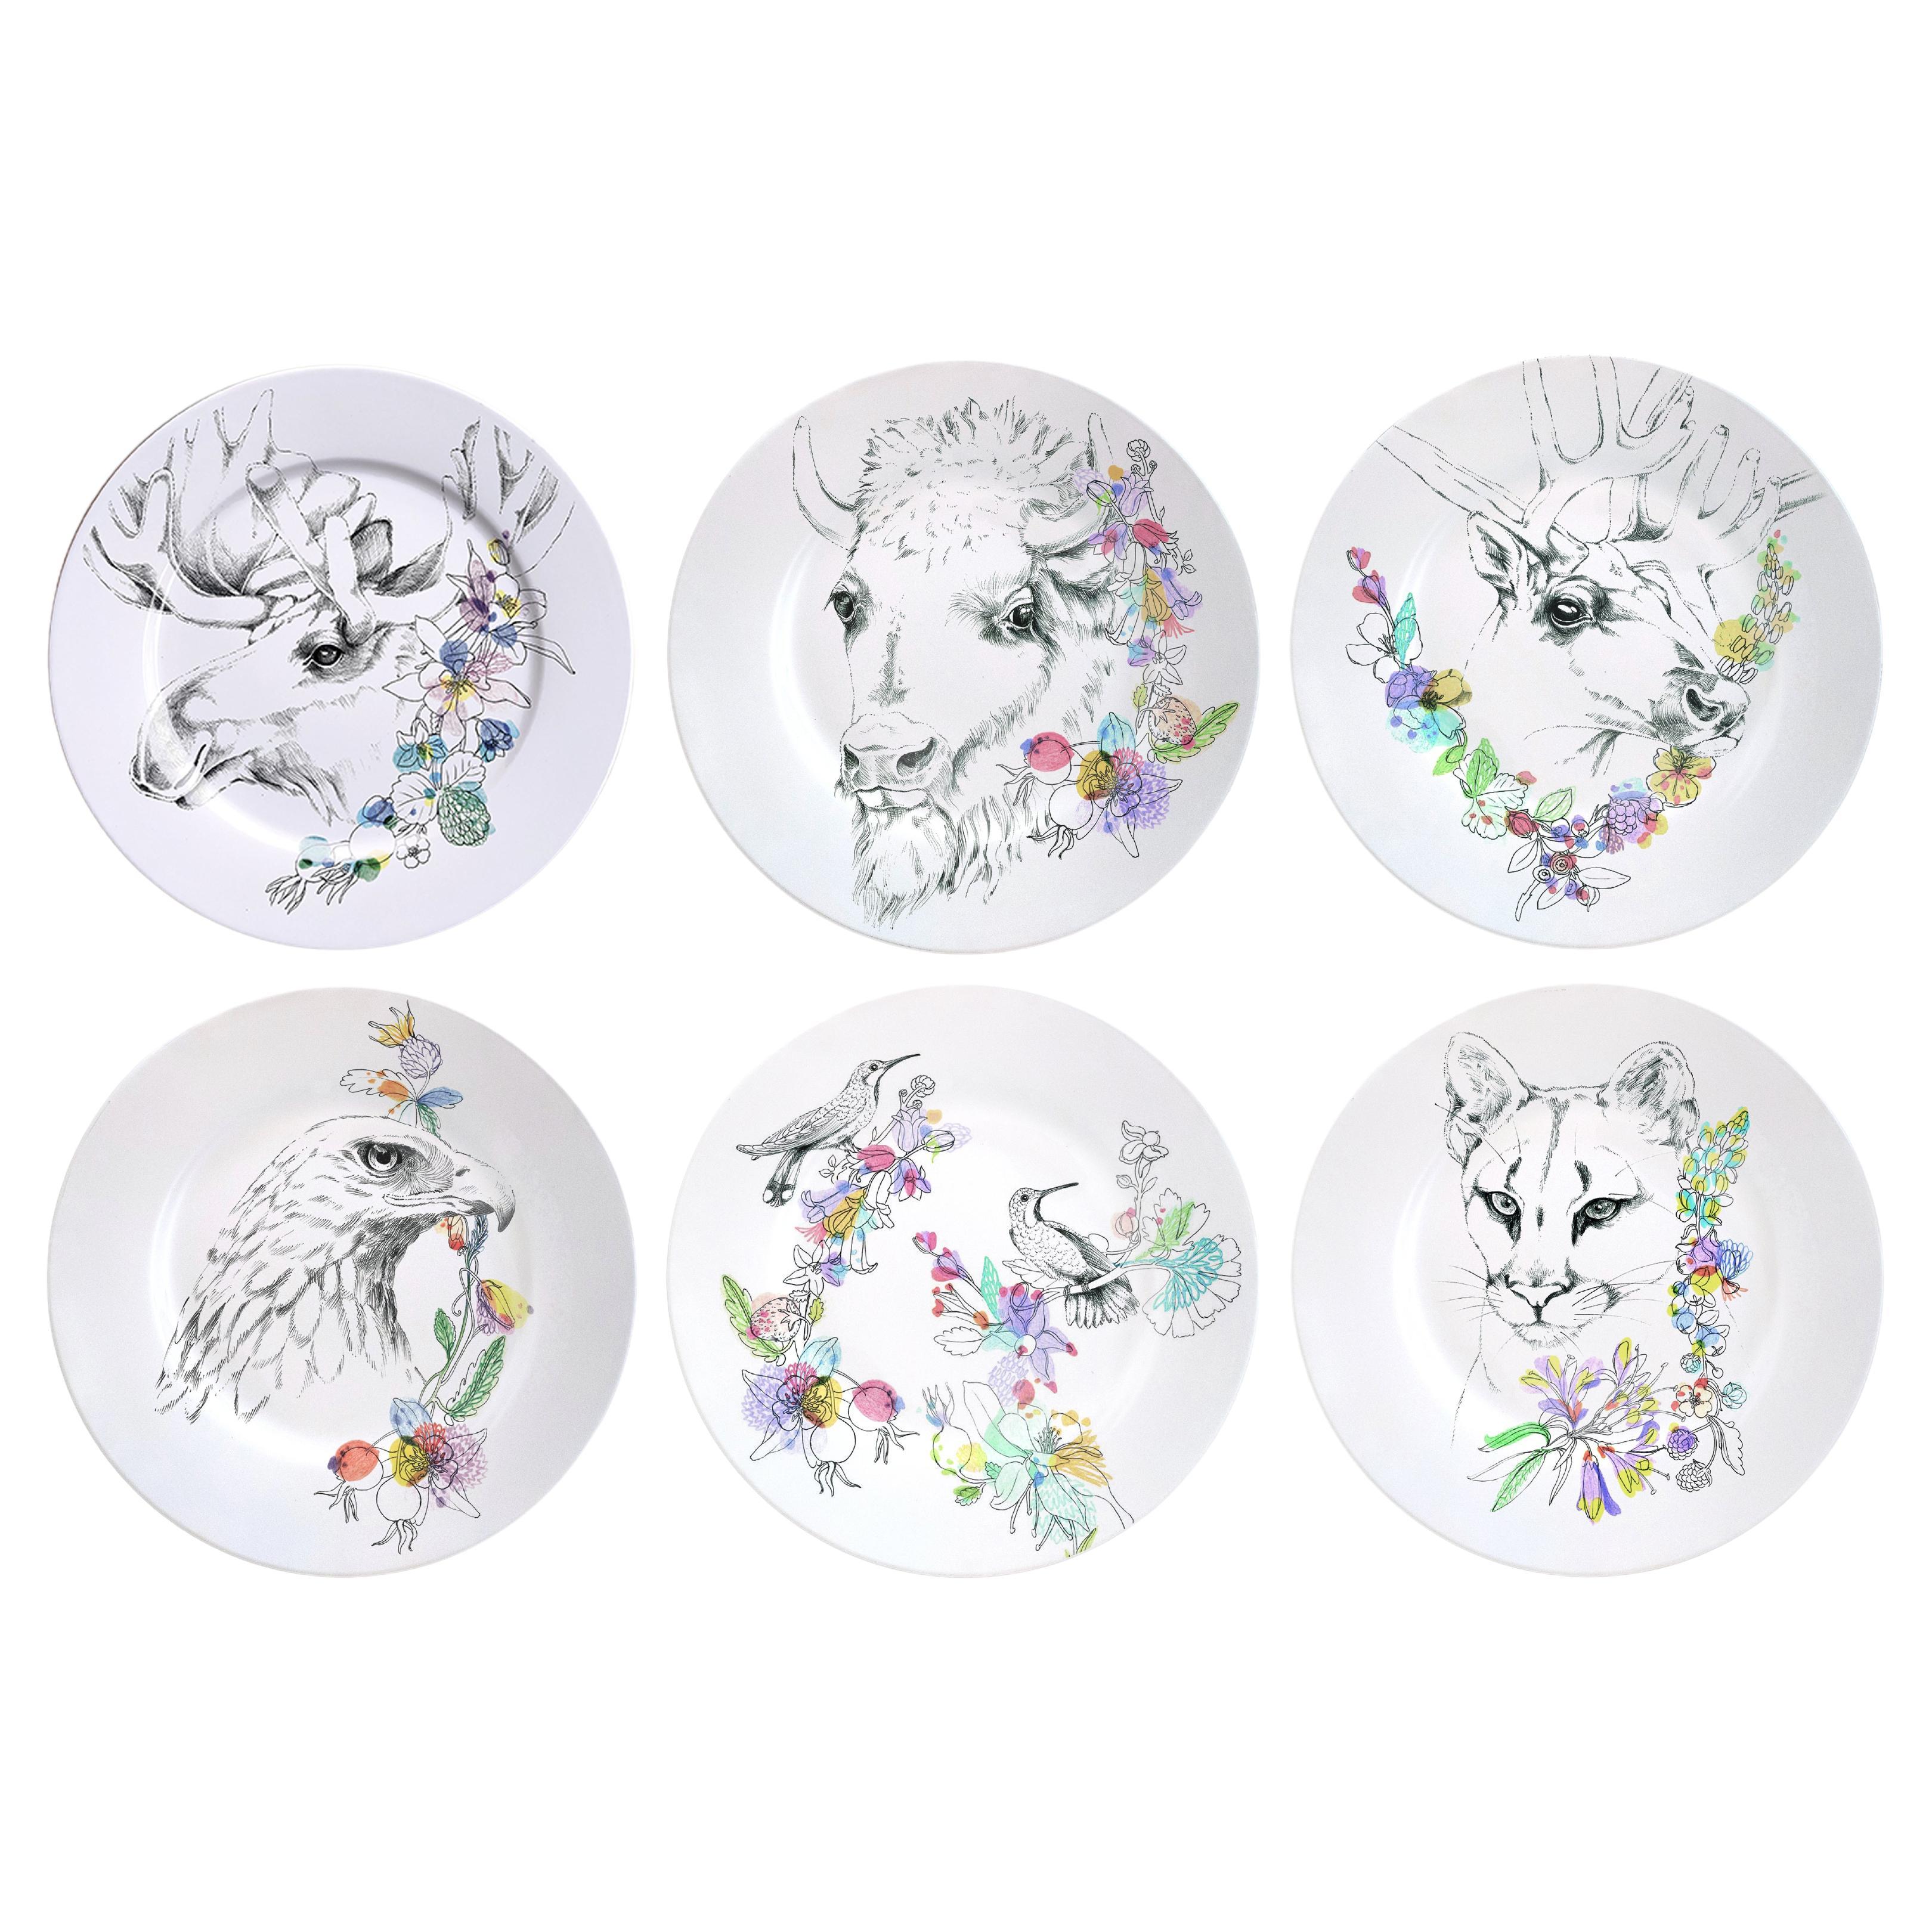 Six assiettes plates contemporaines en porcelaine Ode to the Woods avec animaux et trèfles